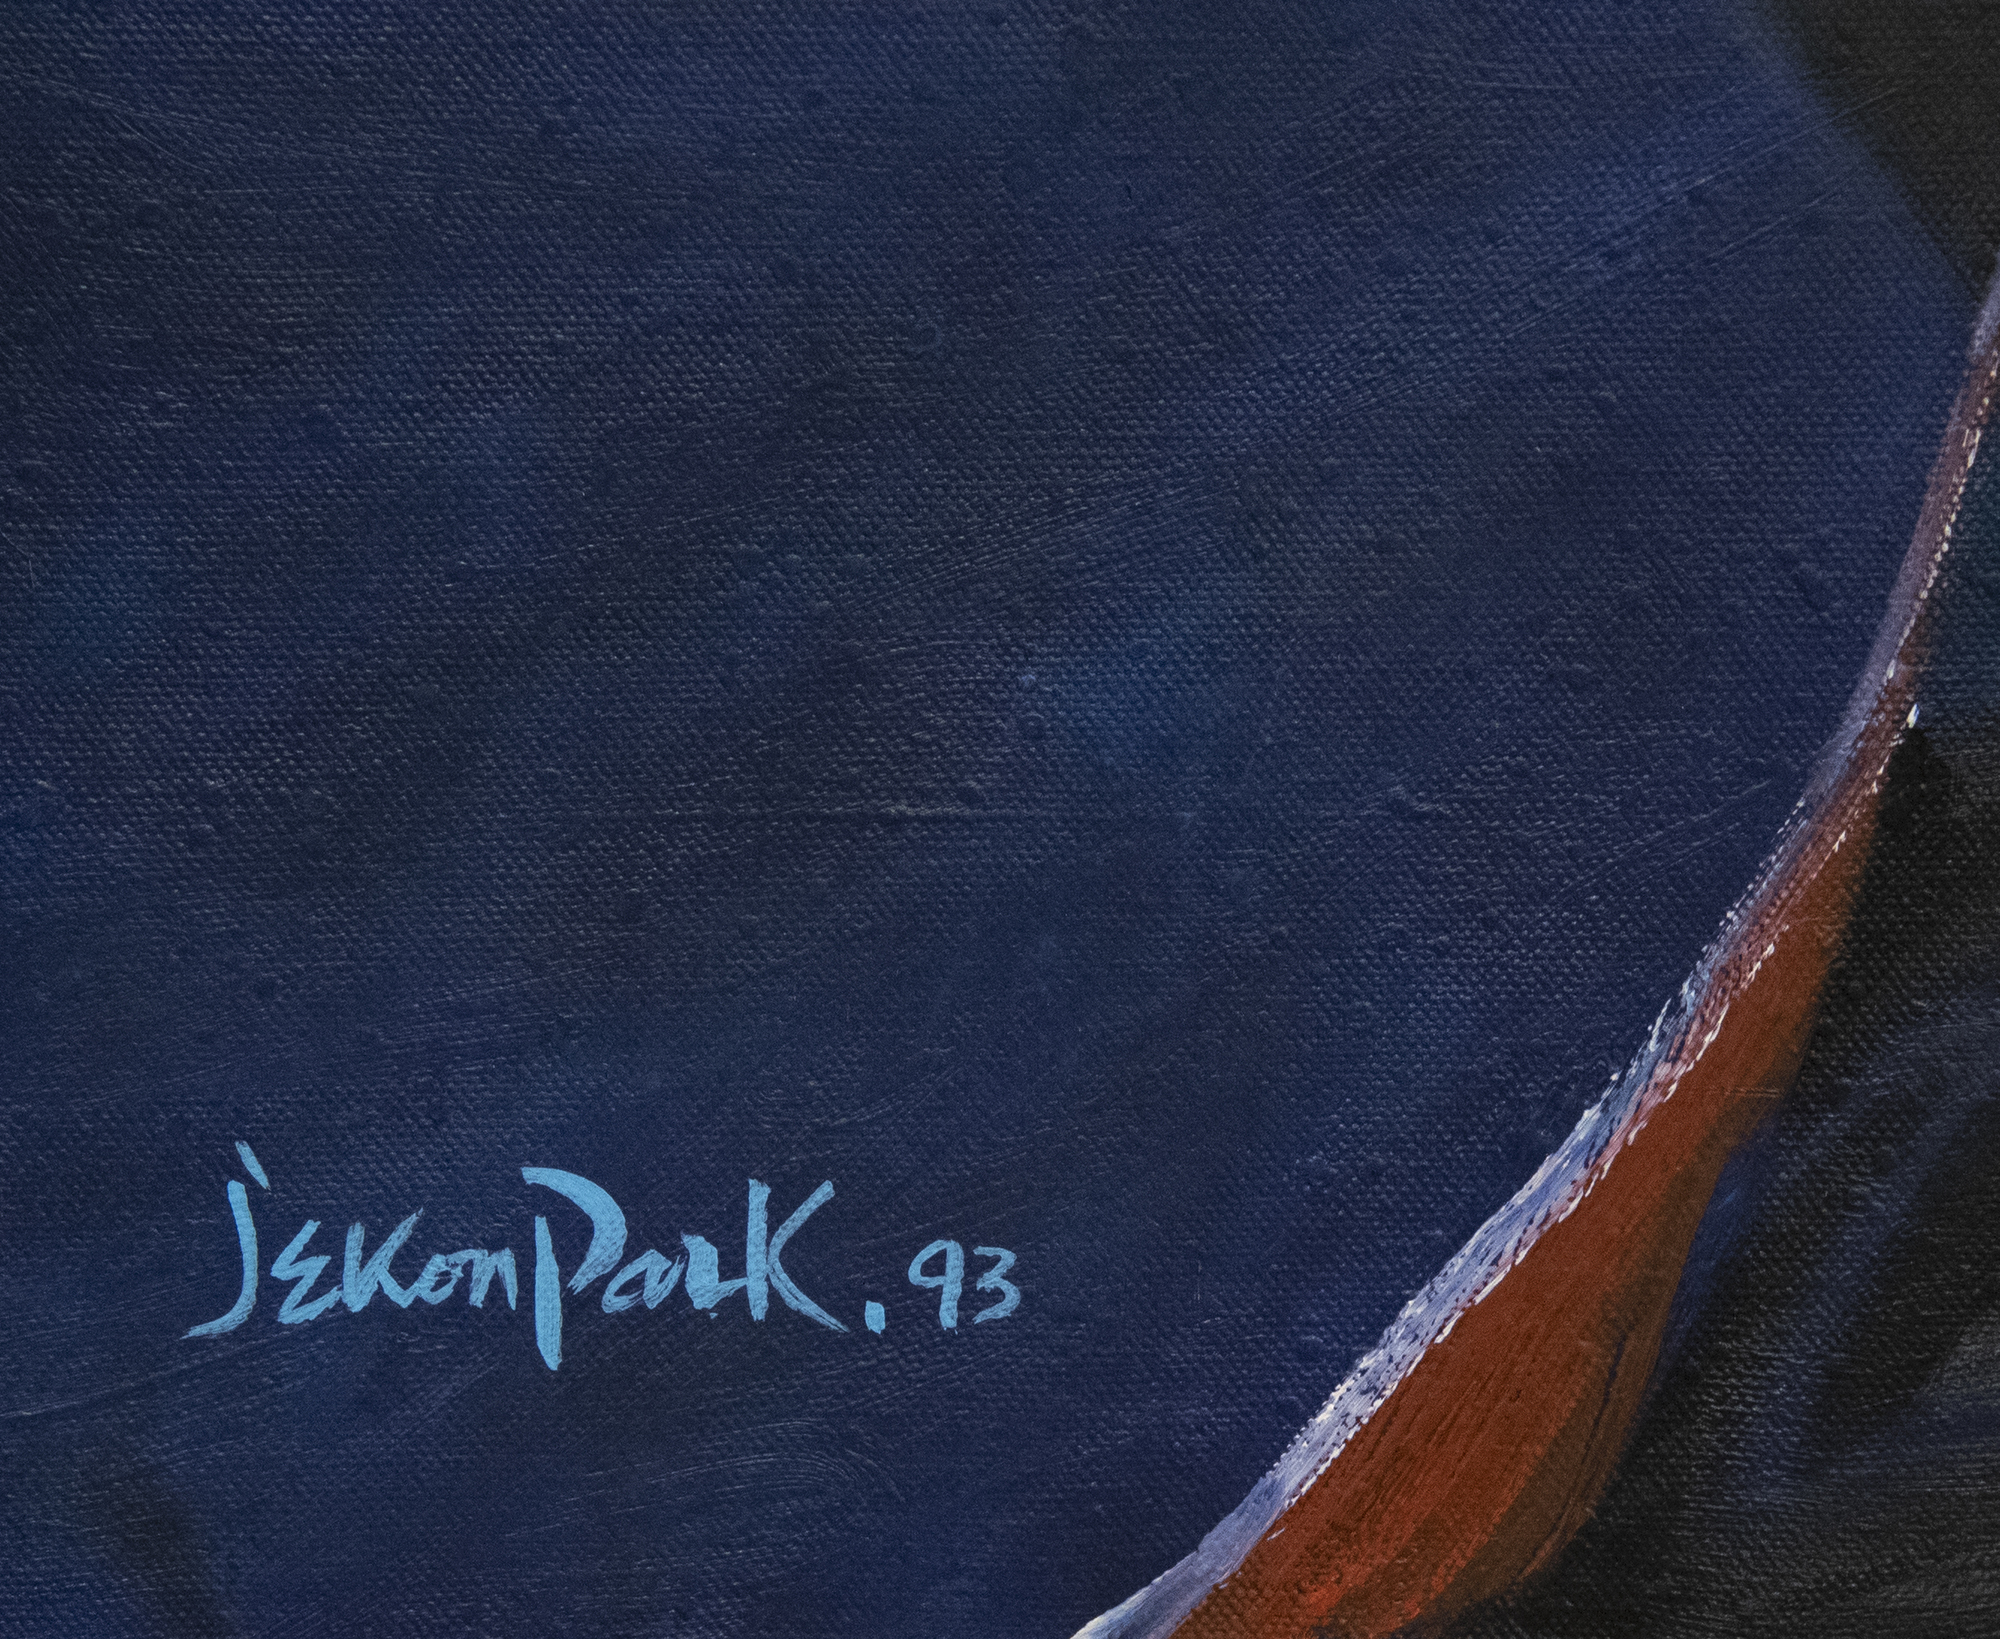 JAE KON PARK - Sans titre - huile sur toile - 36 x 45 1/2 po.